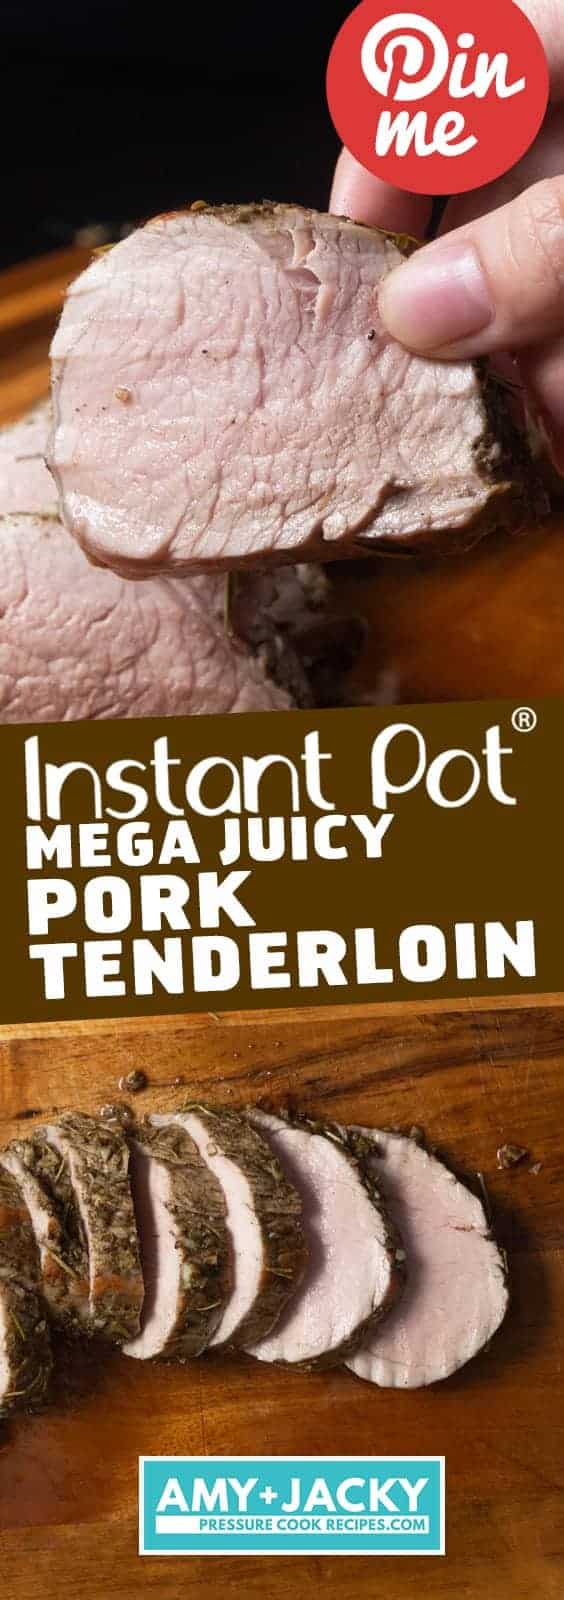 Instant Pot Pork Tenderloin | Instapot Pork Tenderloin | Pressure Cooker Pork Tenderloin | Instant Pot Pork | Pressure Cooker Pork | How to cook Pork Tenderloin | Pork Tenderloin Recipes | Instant Pot Recipes | Pressure Cooker Recipes #instantpot #pressurecooker #healthy #easy #dinner #pork